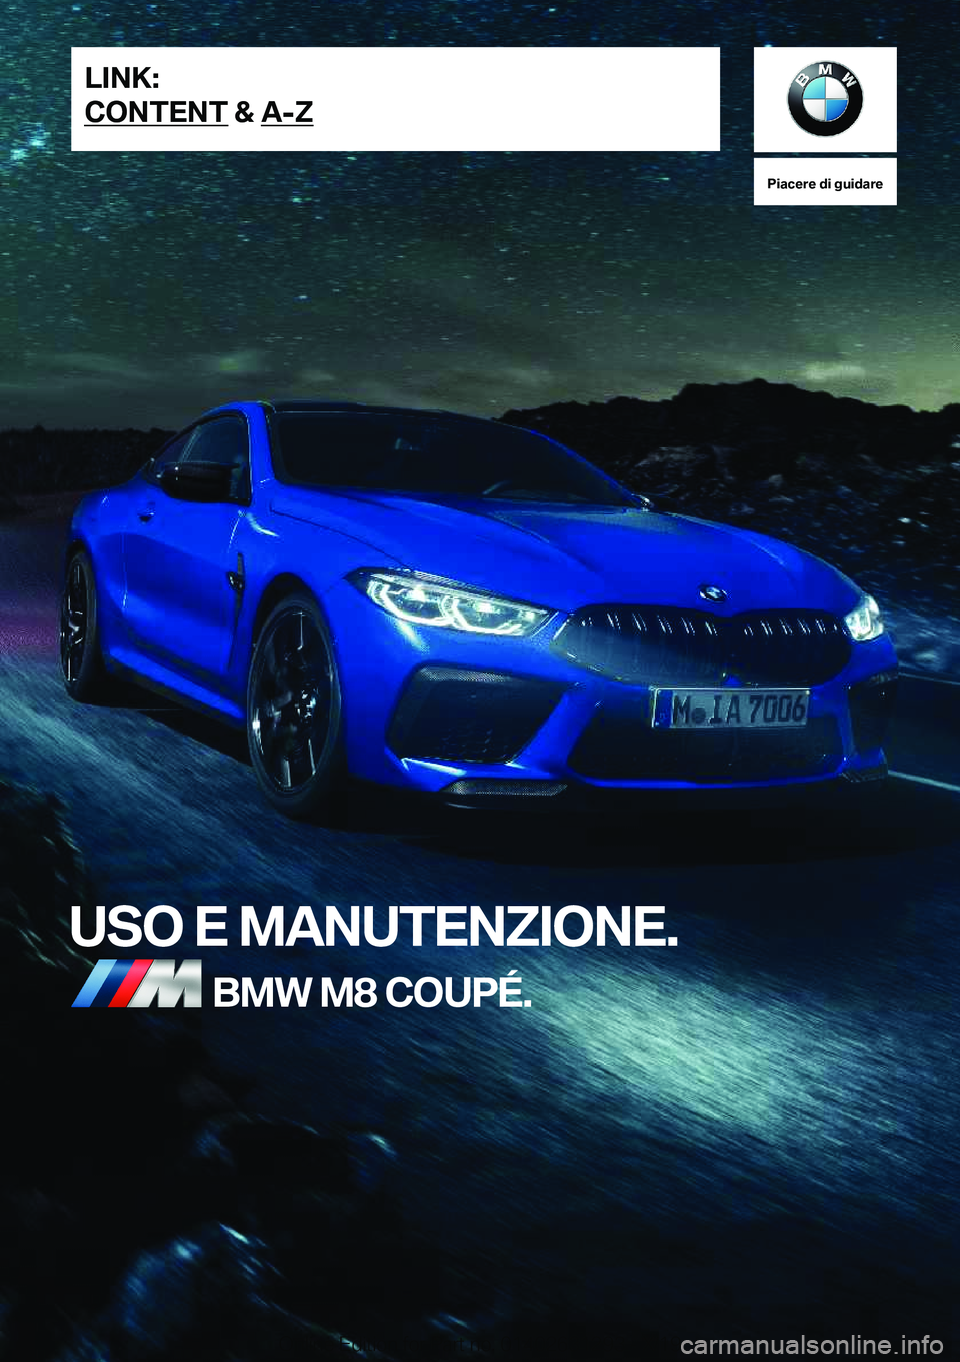 BMW M8 2020  Libretti Di Uso E manutenzione (in Italian) �P�i�a�c�e�r�e��d�i��g�u�i�d�a�r�e
�U�S�O��E��M�A�N�U�T�E�N�Z�I�O�N�E�.�B�M�W��M�8��C�O�U�P�